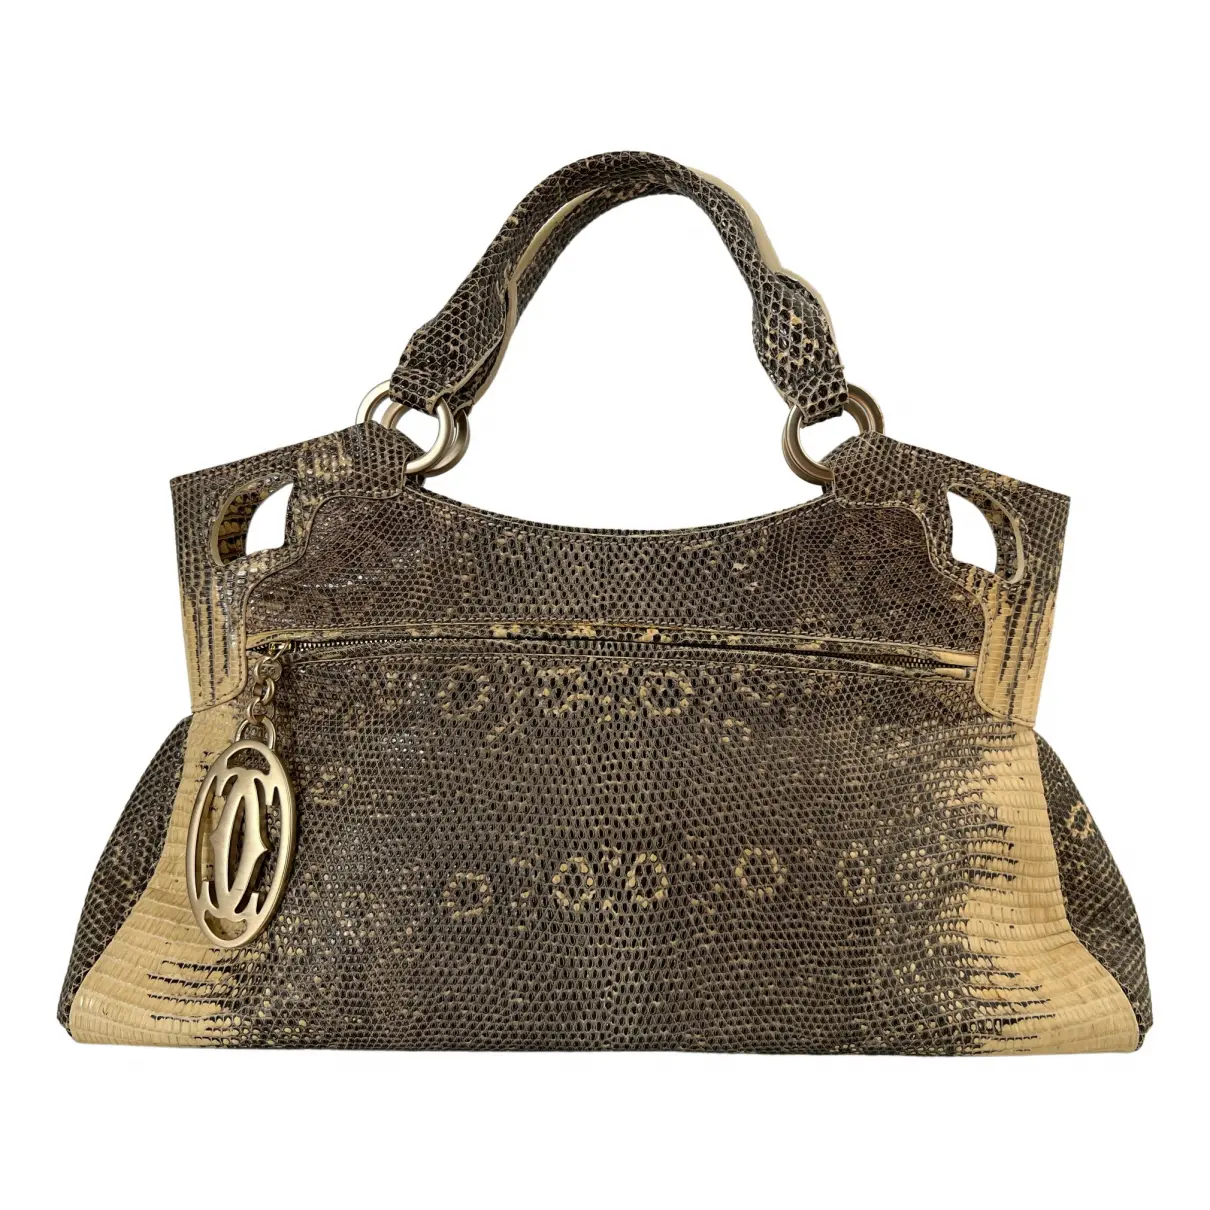 Marcello lizard handbag Cartier